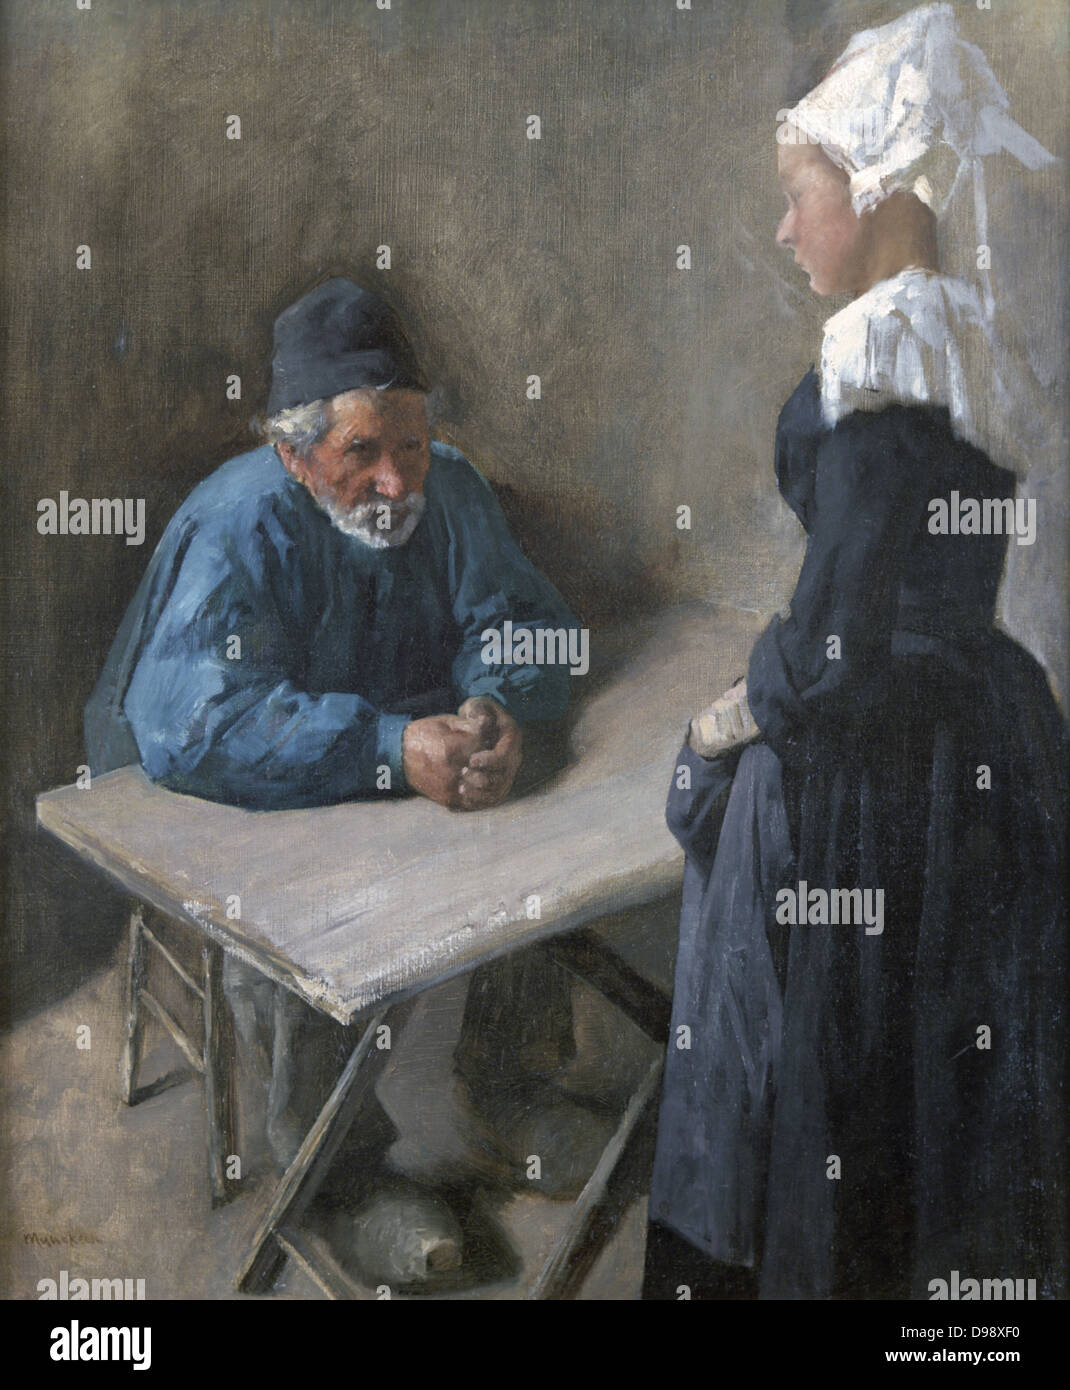 Mieten einen Diener ". Öl auf Leinwand. Ungarische Maler Mihaly Munkacsky (1844-1900). Blau grau weißer Mann-Frau-Tabelle Stockfoto